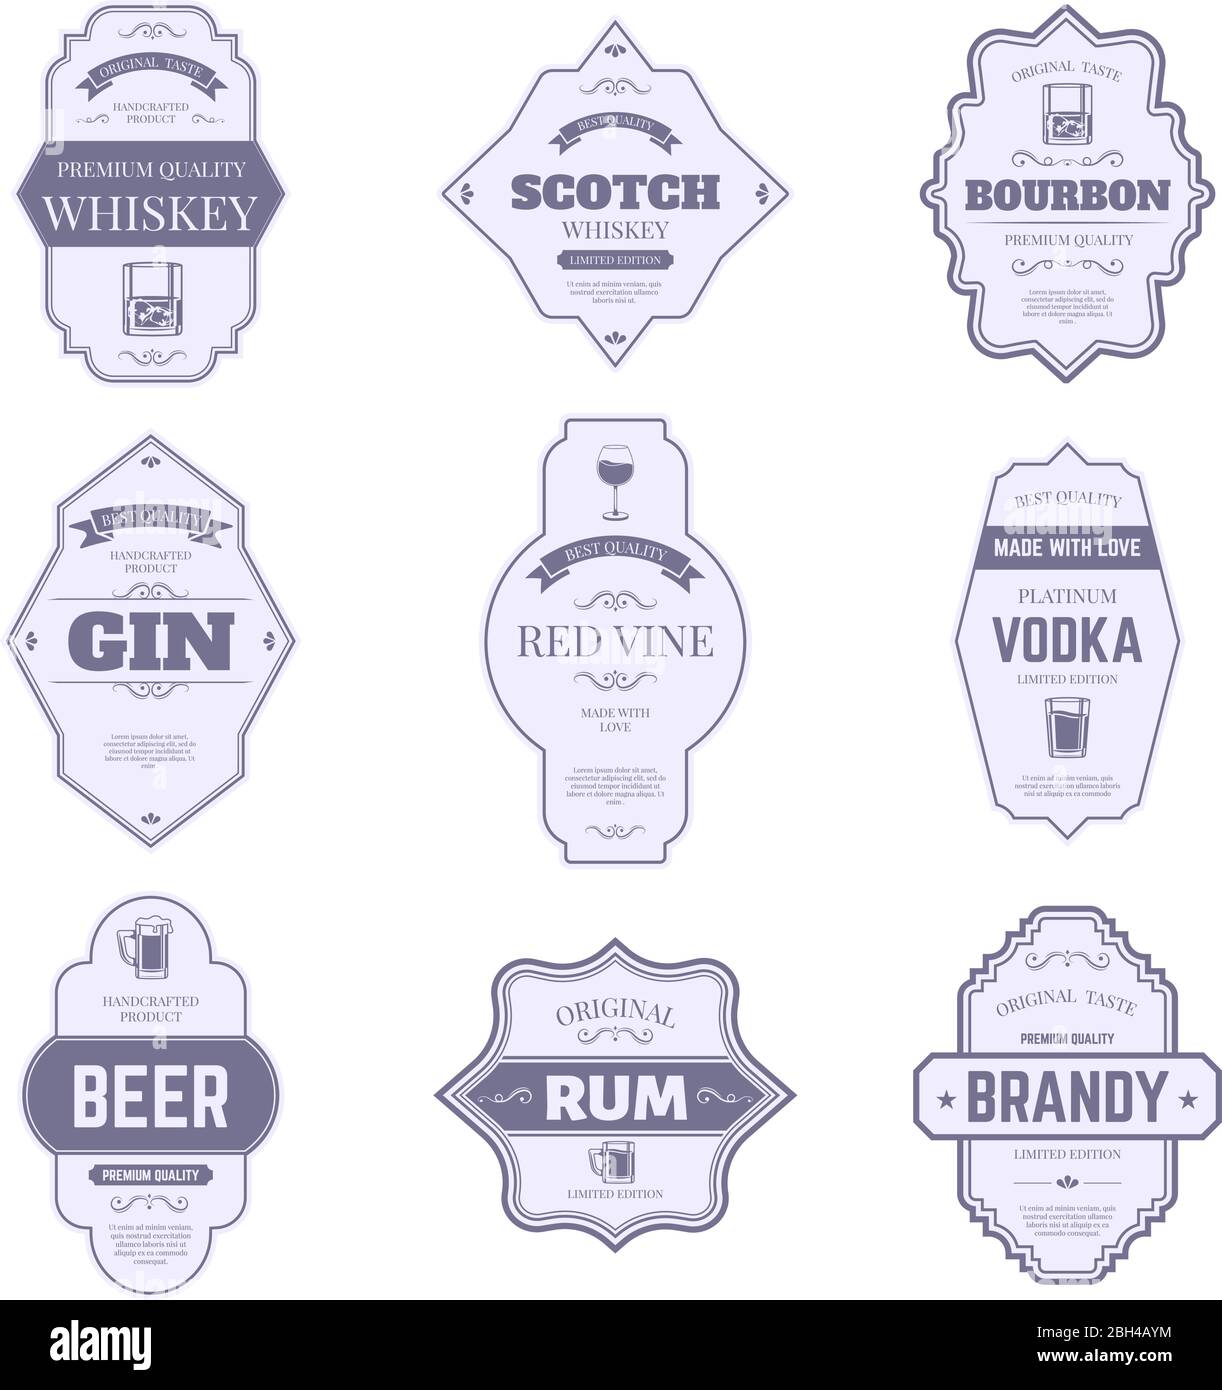 Etichette per bottiglie di alcol. Adesivi alcolici tradizionali, emblema per bottiglie vintage bourbon e gin, etichette per confezioni da bar con simboli isolati vettoriali. Vino Illustrazione Vettoriale